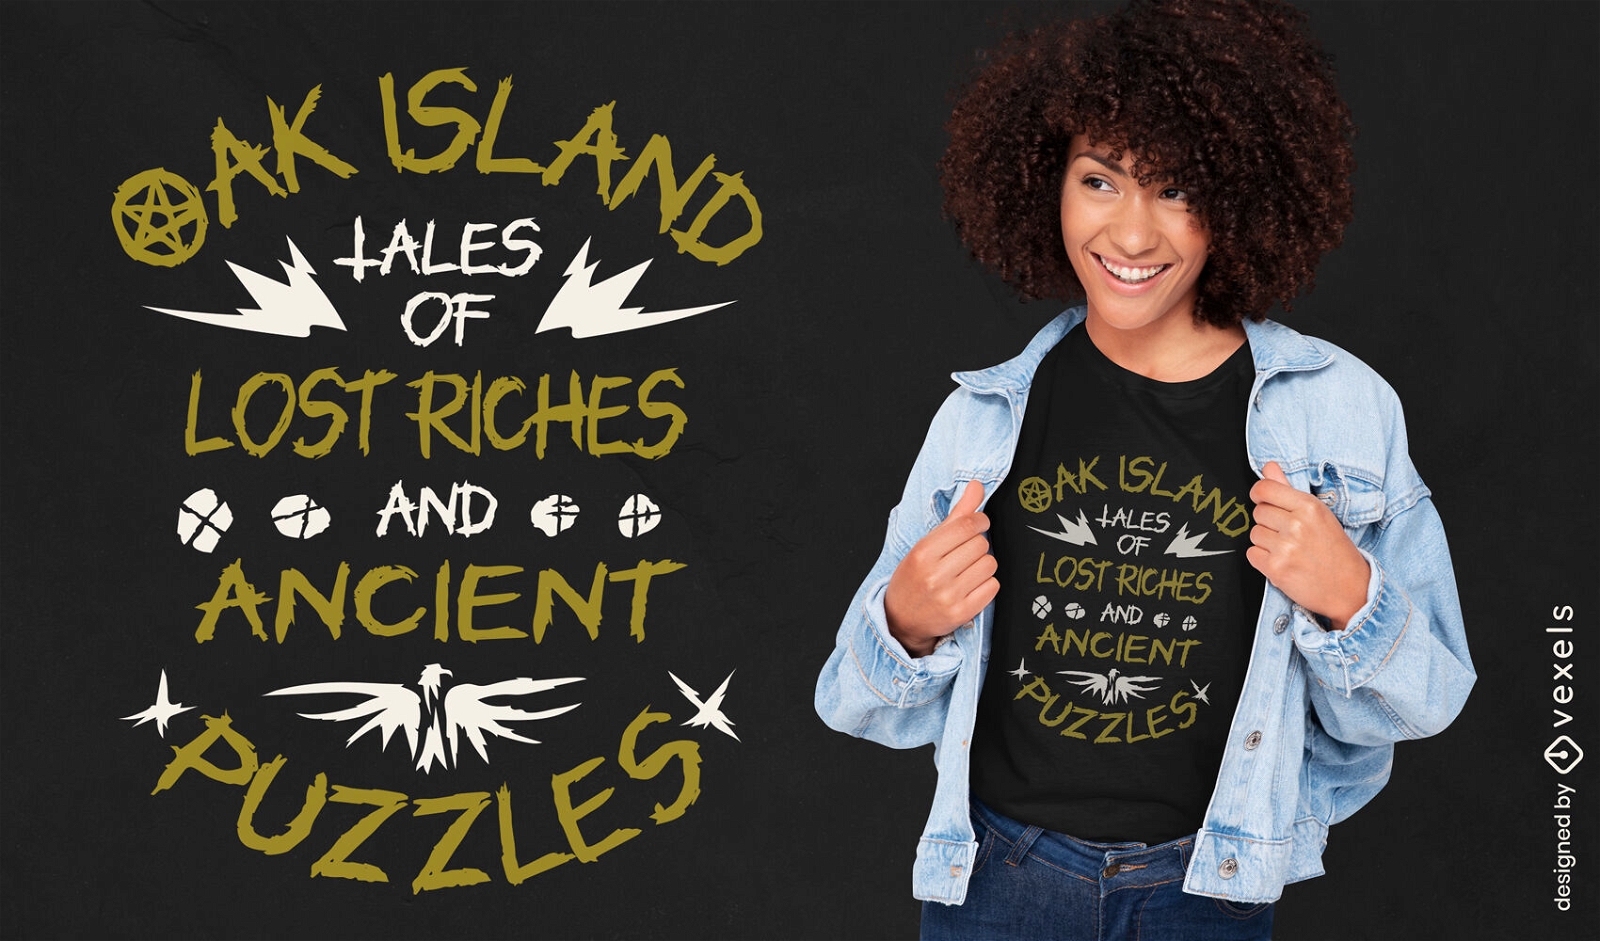 Oak island treasures ancient puzzles t-shirt design